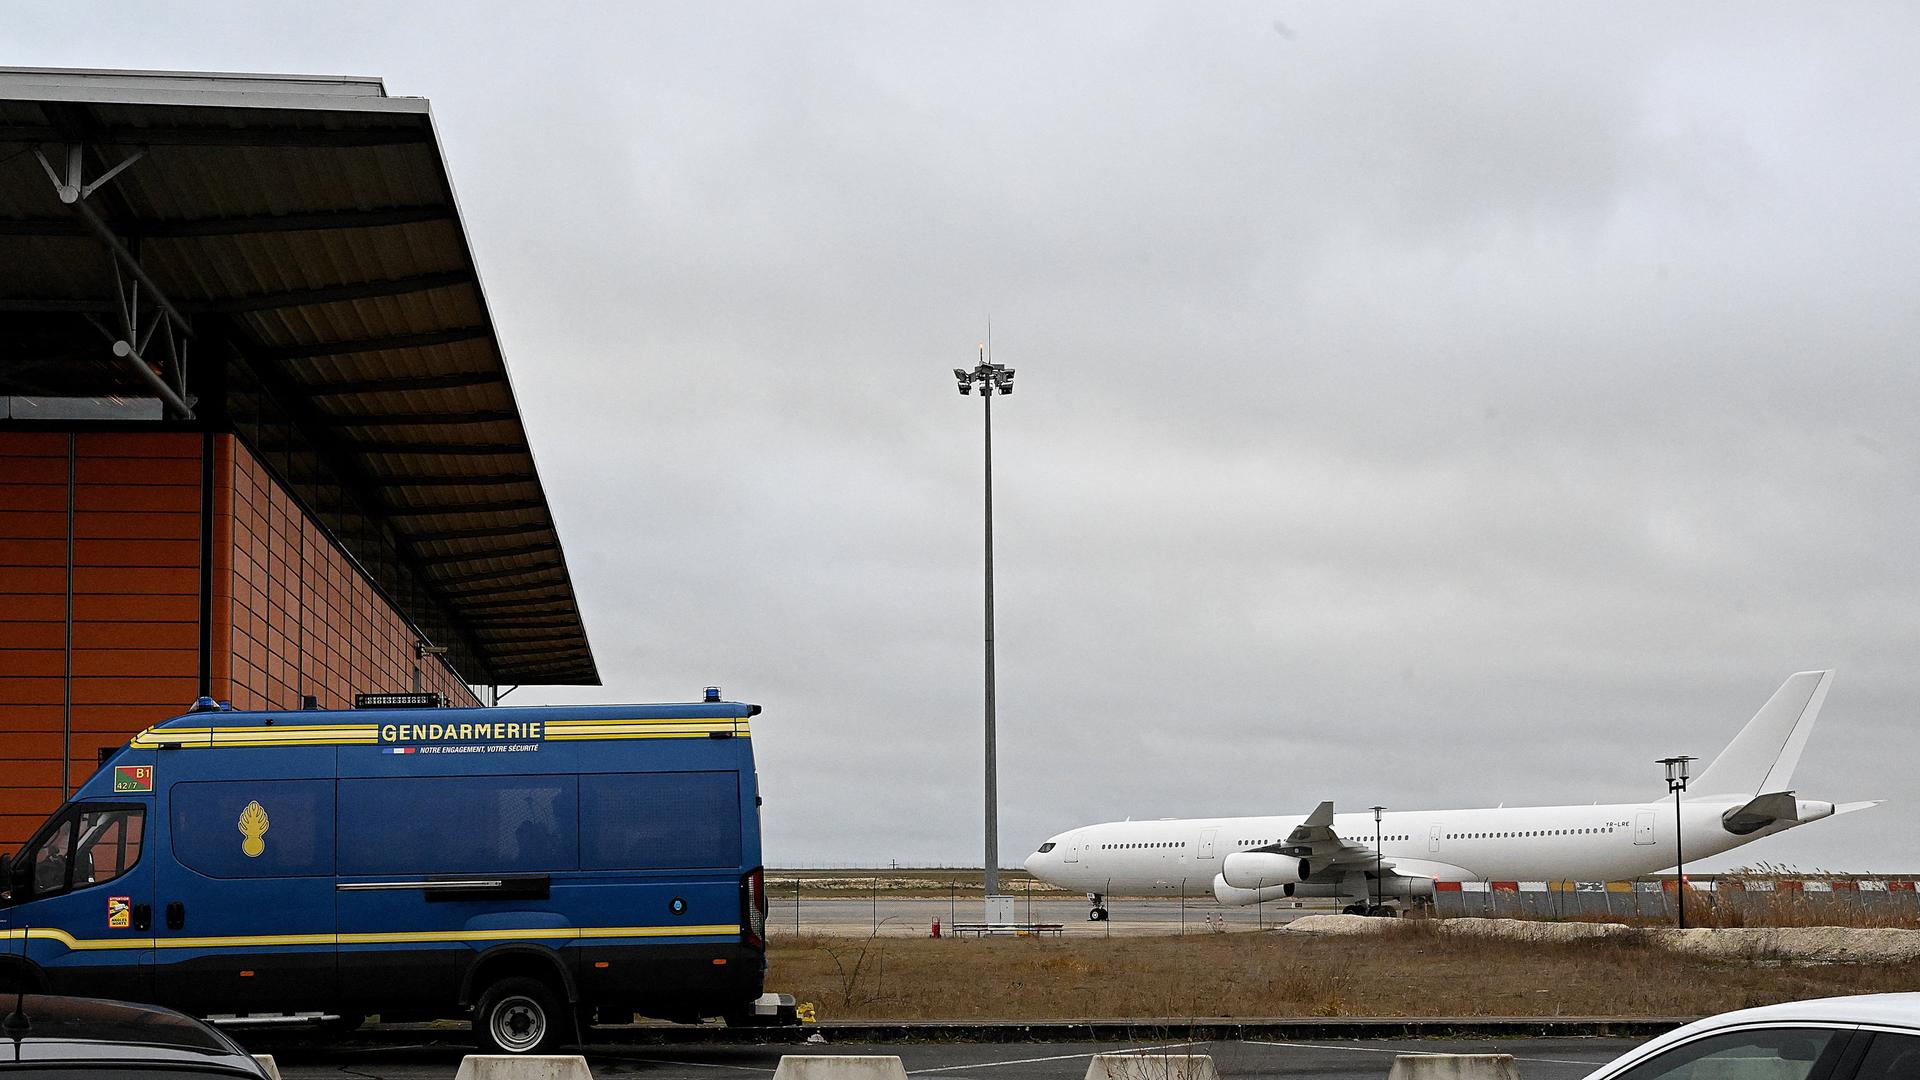 Ein Fahrzeug der Gendarmerie steht vor dem französischen Flughafen Vatry. Im Hintergrund ist ein Flugzeug zu sehen.